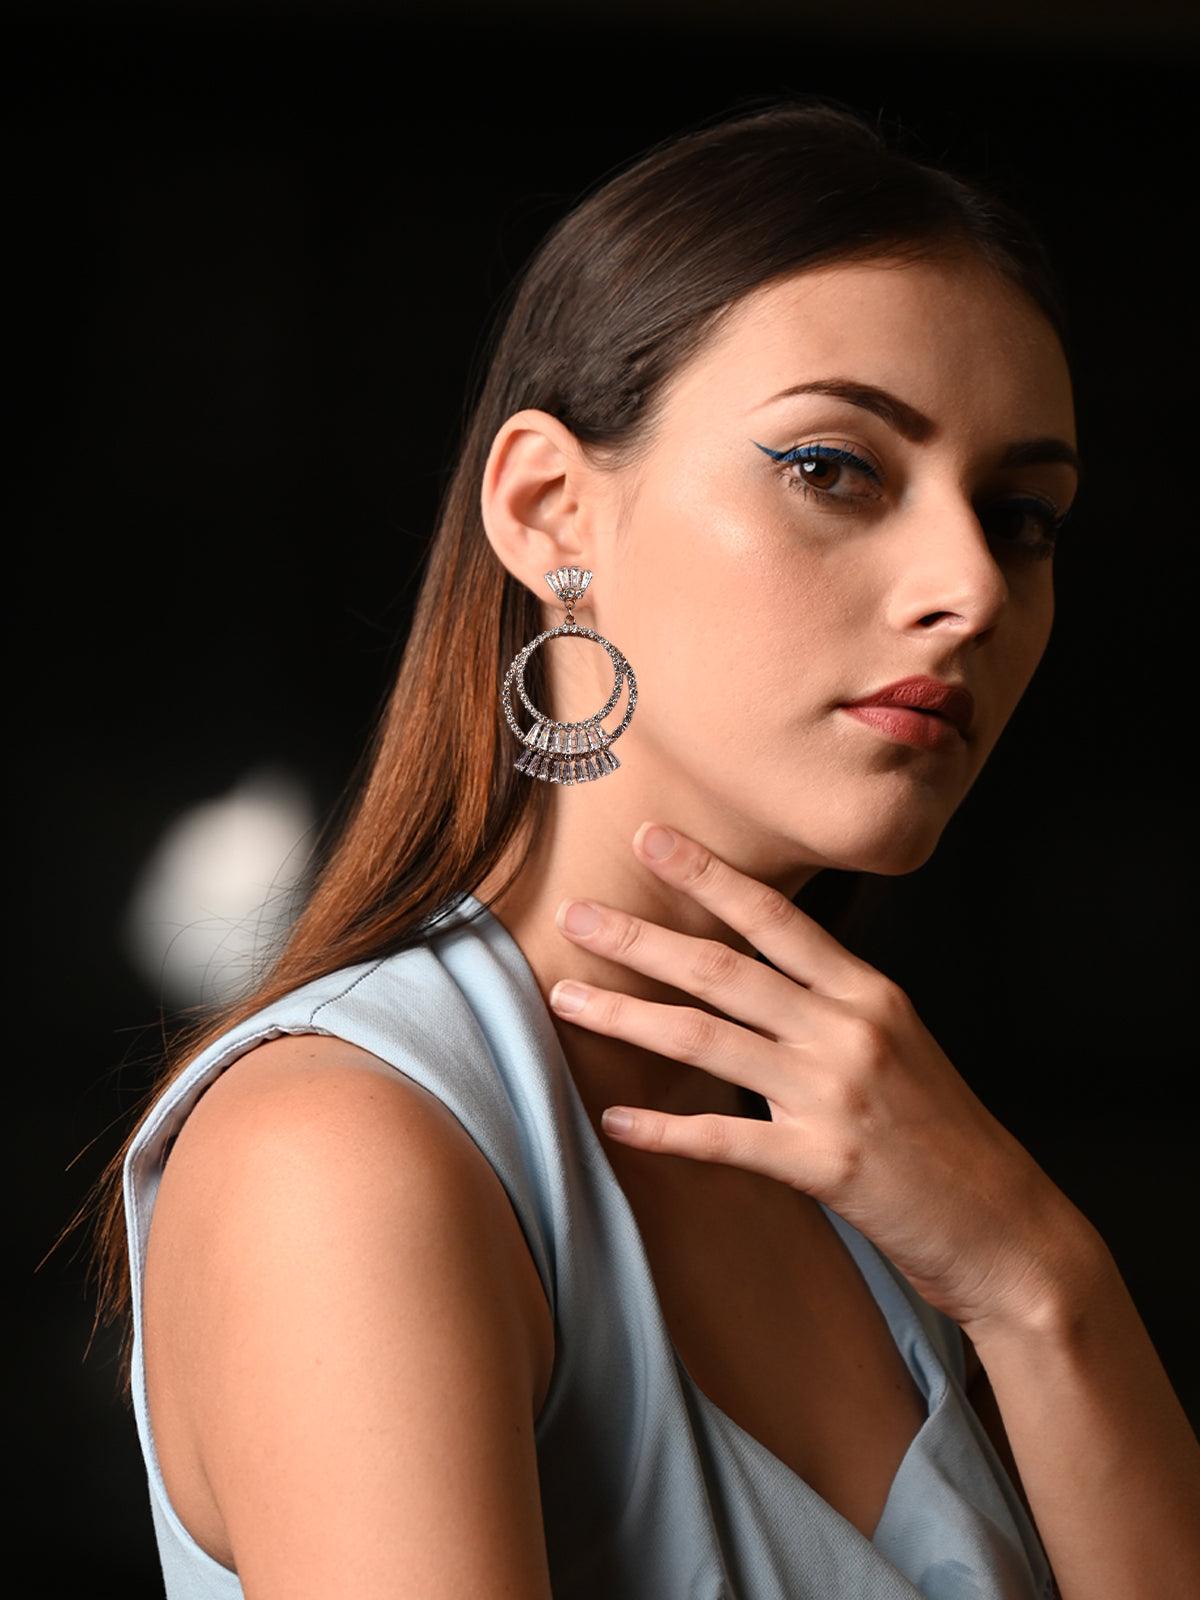 Women's Elegant Double Hoop Crystal Earrings - Odette